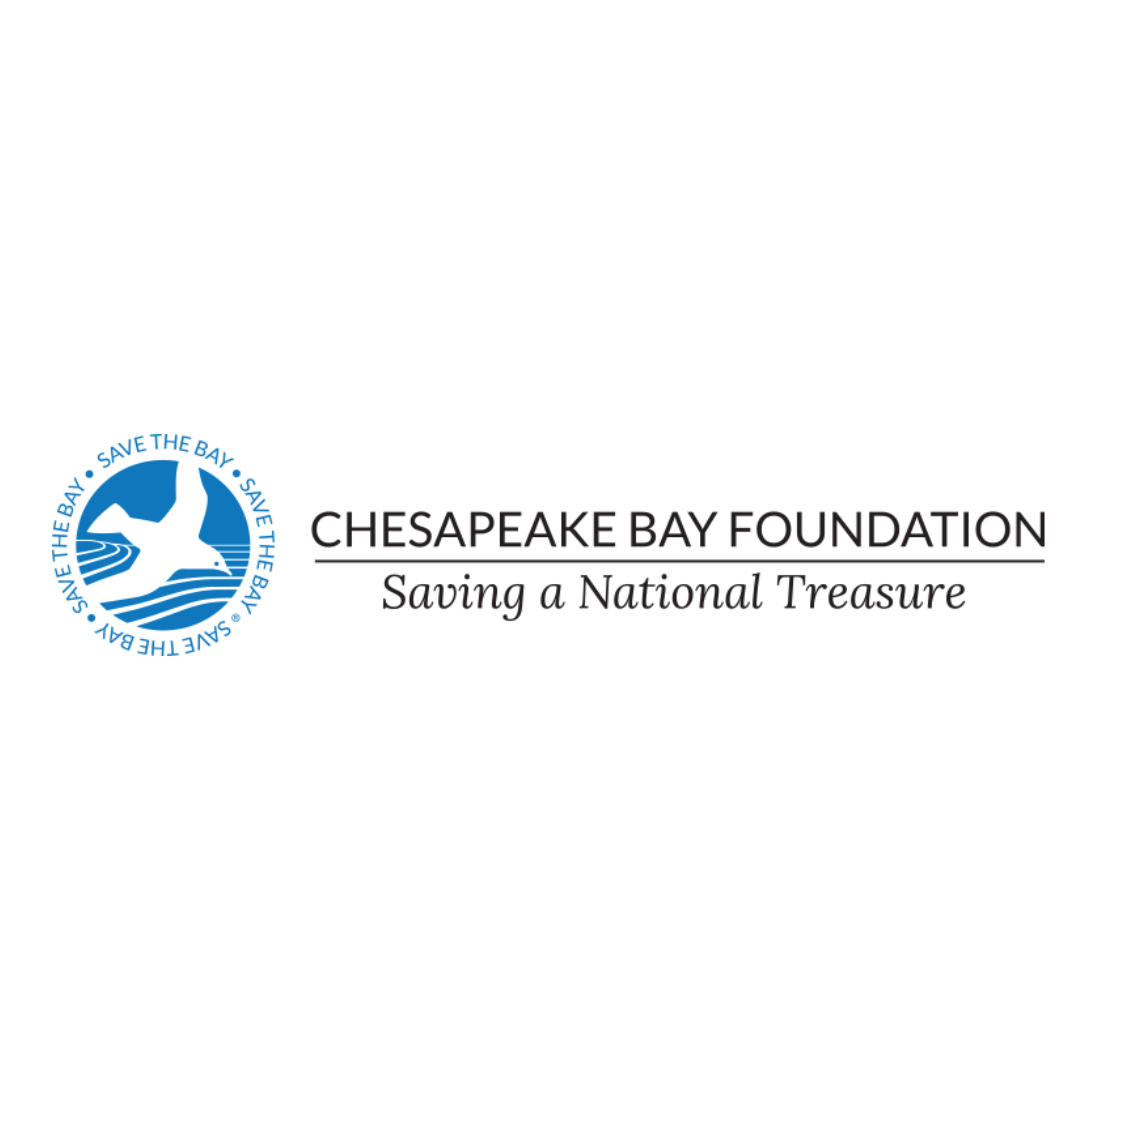 Chesapeake bay foundation logo